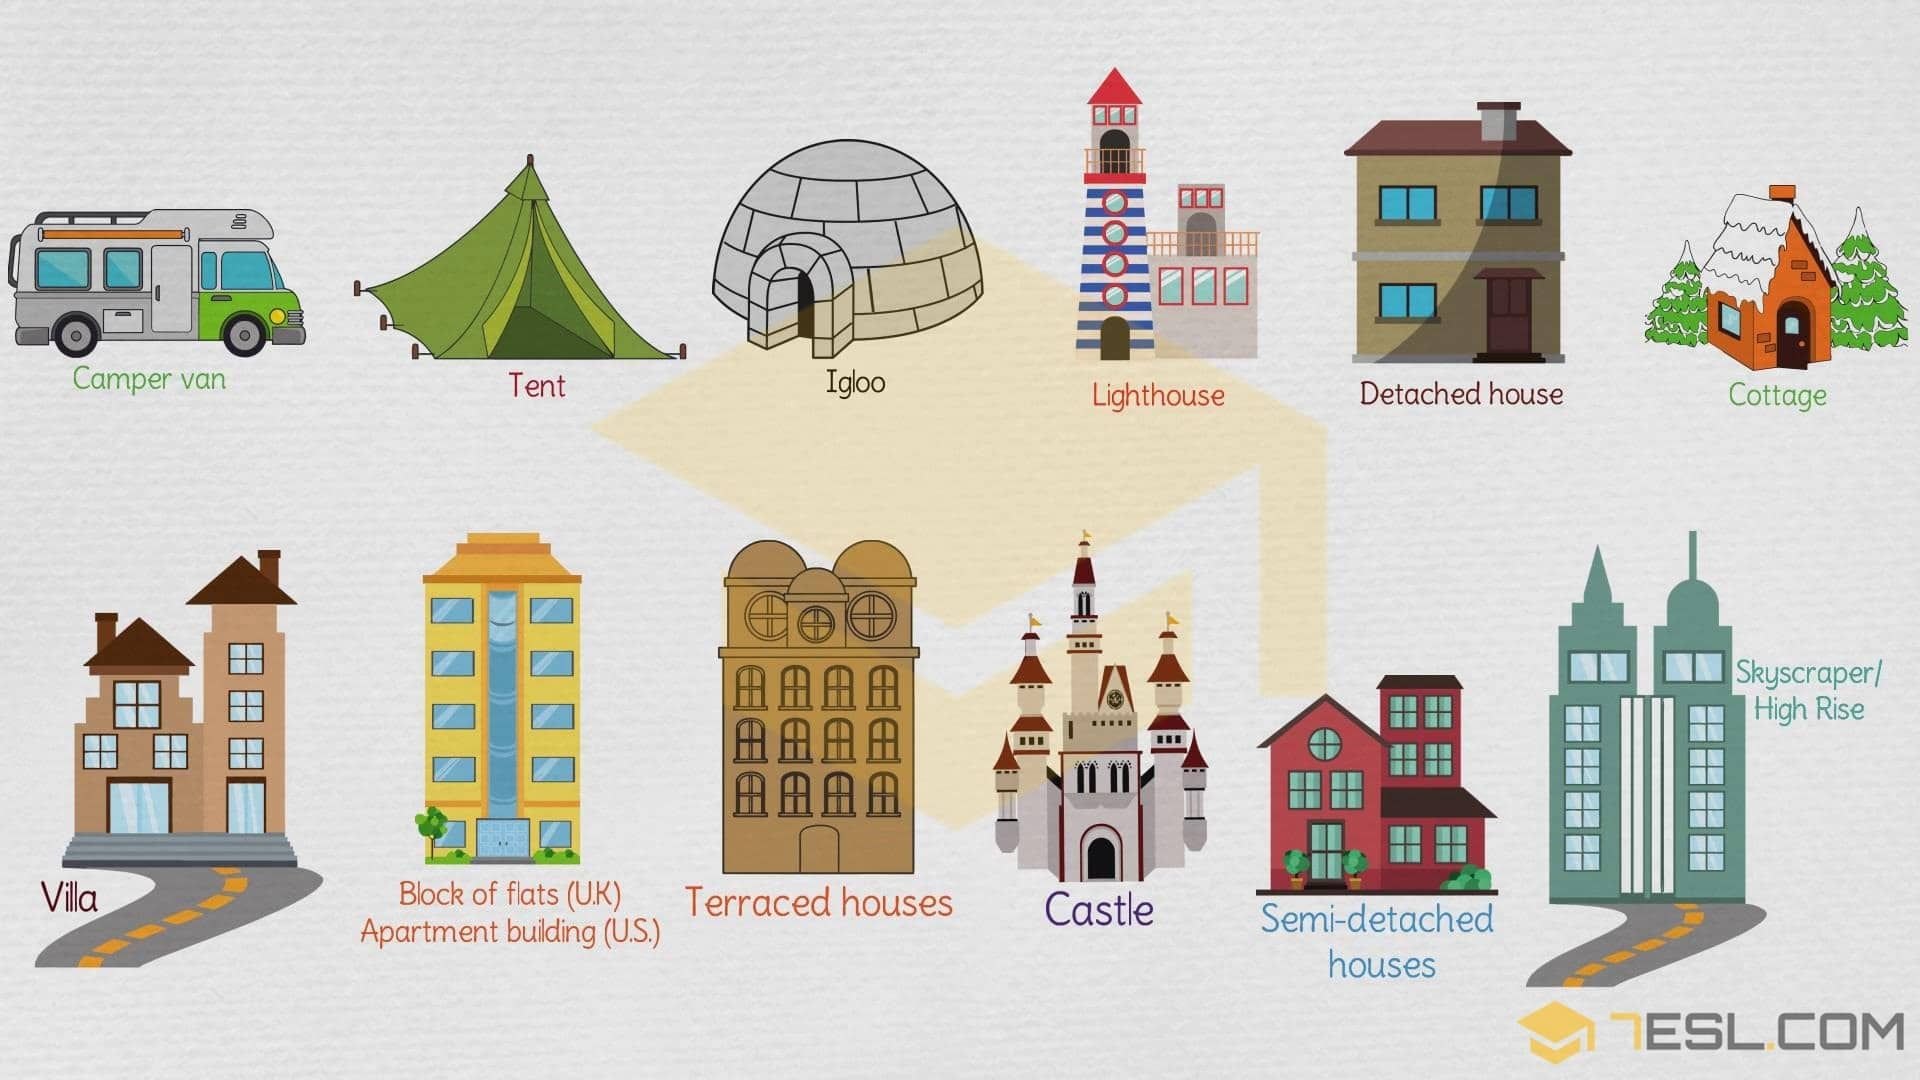 Kinds of housing. Иллюстрации разных домов. Изображения различных архитектурных построек. Картинки здания дома. Здания разной архитектуры для дошкольников.